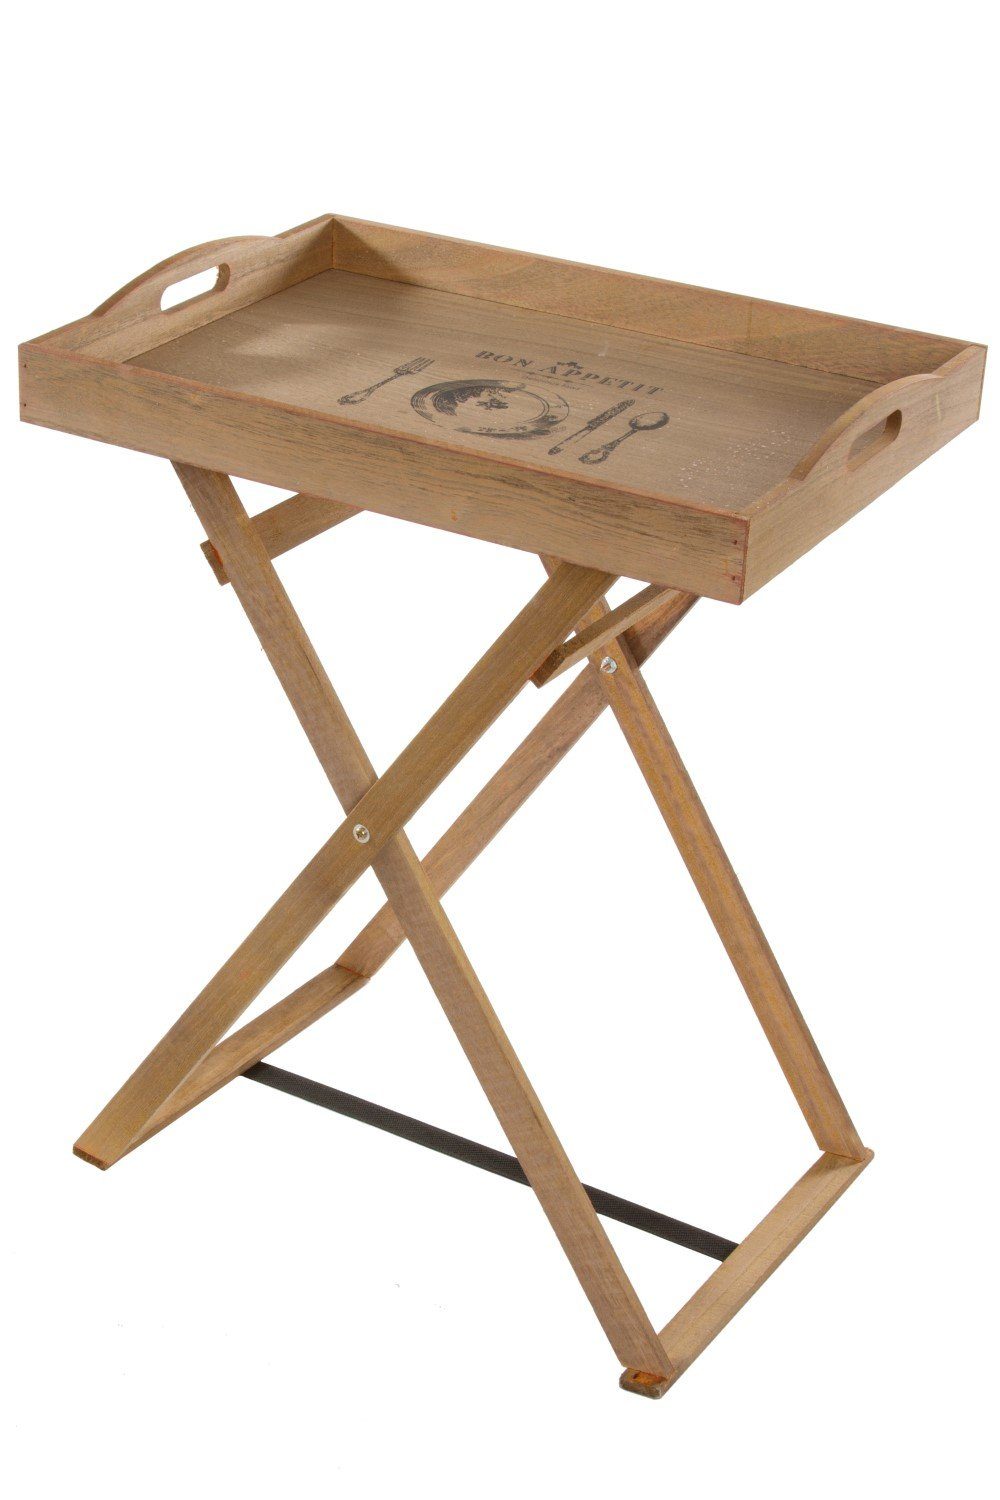 elbmöbel Tabletttisch Holztablett Tablett + Gestell Vintage braun (FALSCH), Beistelltisch: Tabletttisch 48x36x35 cm holz Serviertablett | Tabletttische